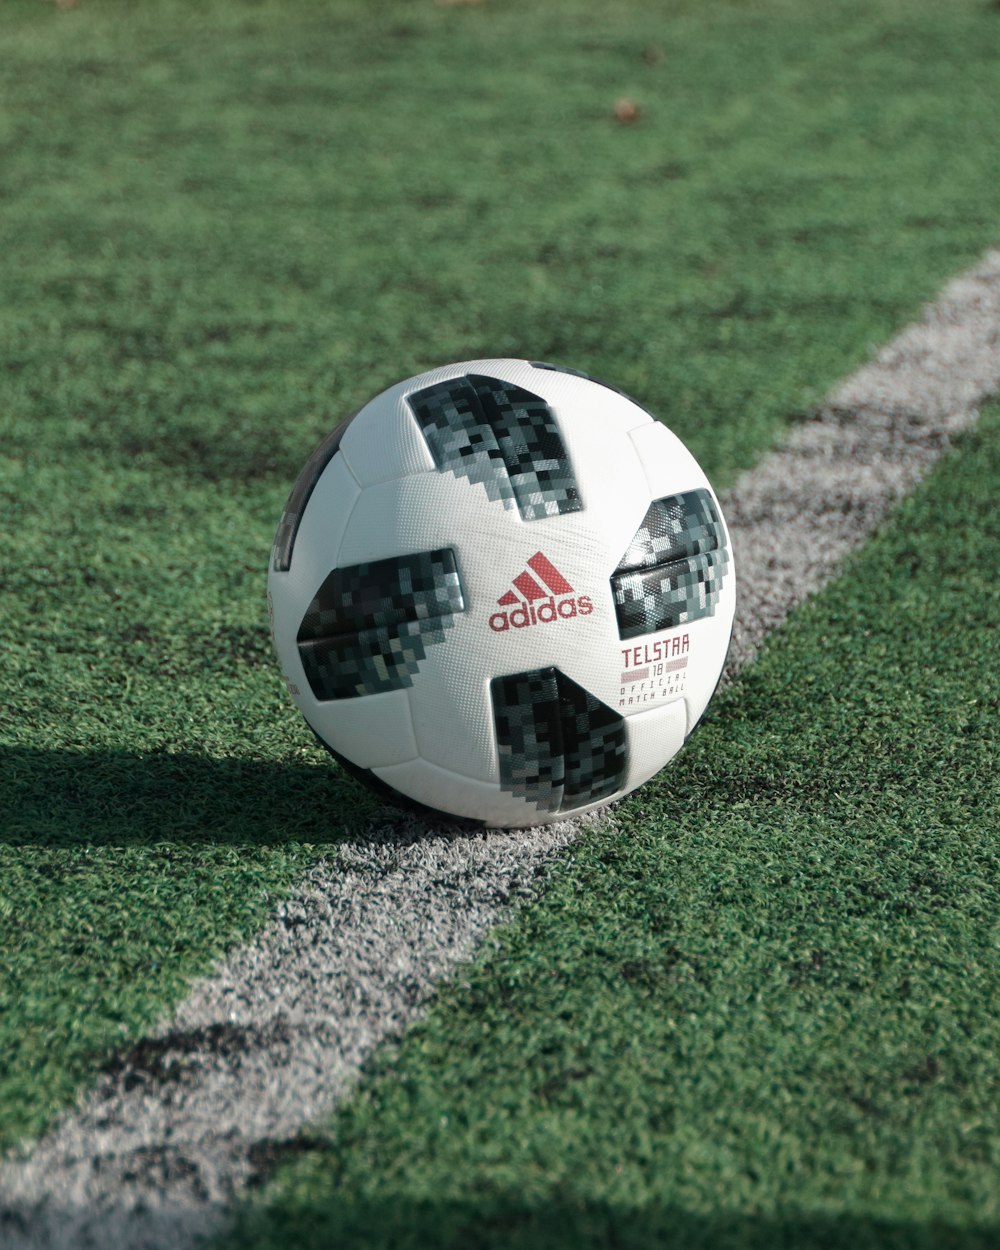 フィールド上のアディダスサッカーボールのクローズアップ写真